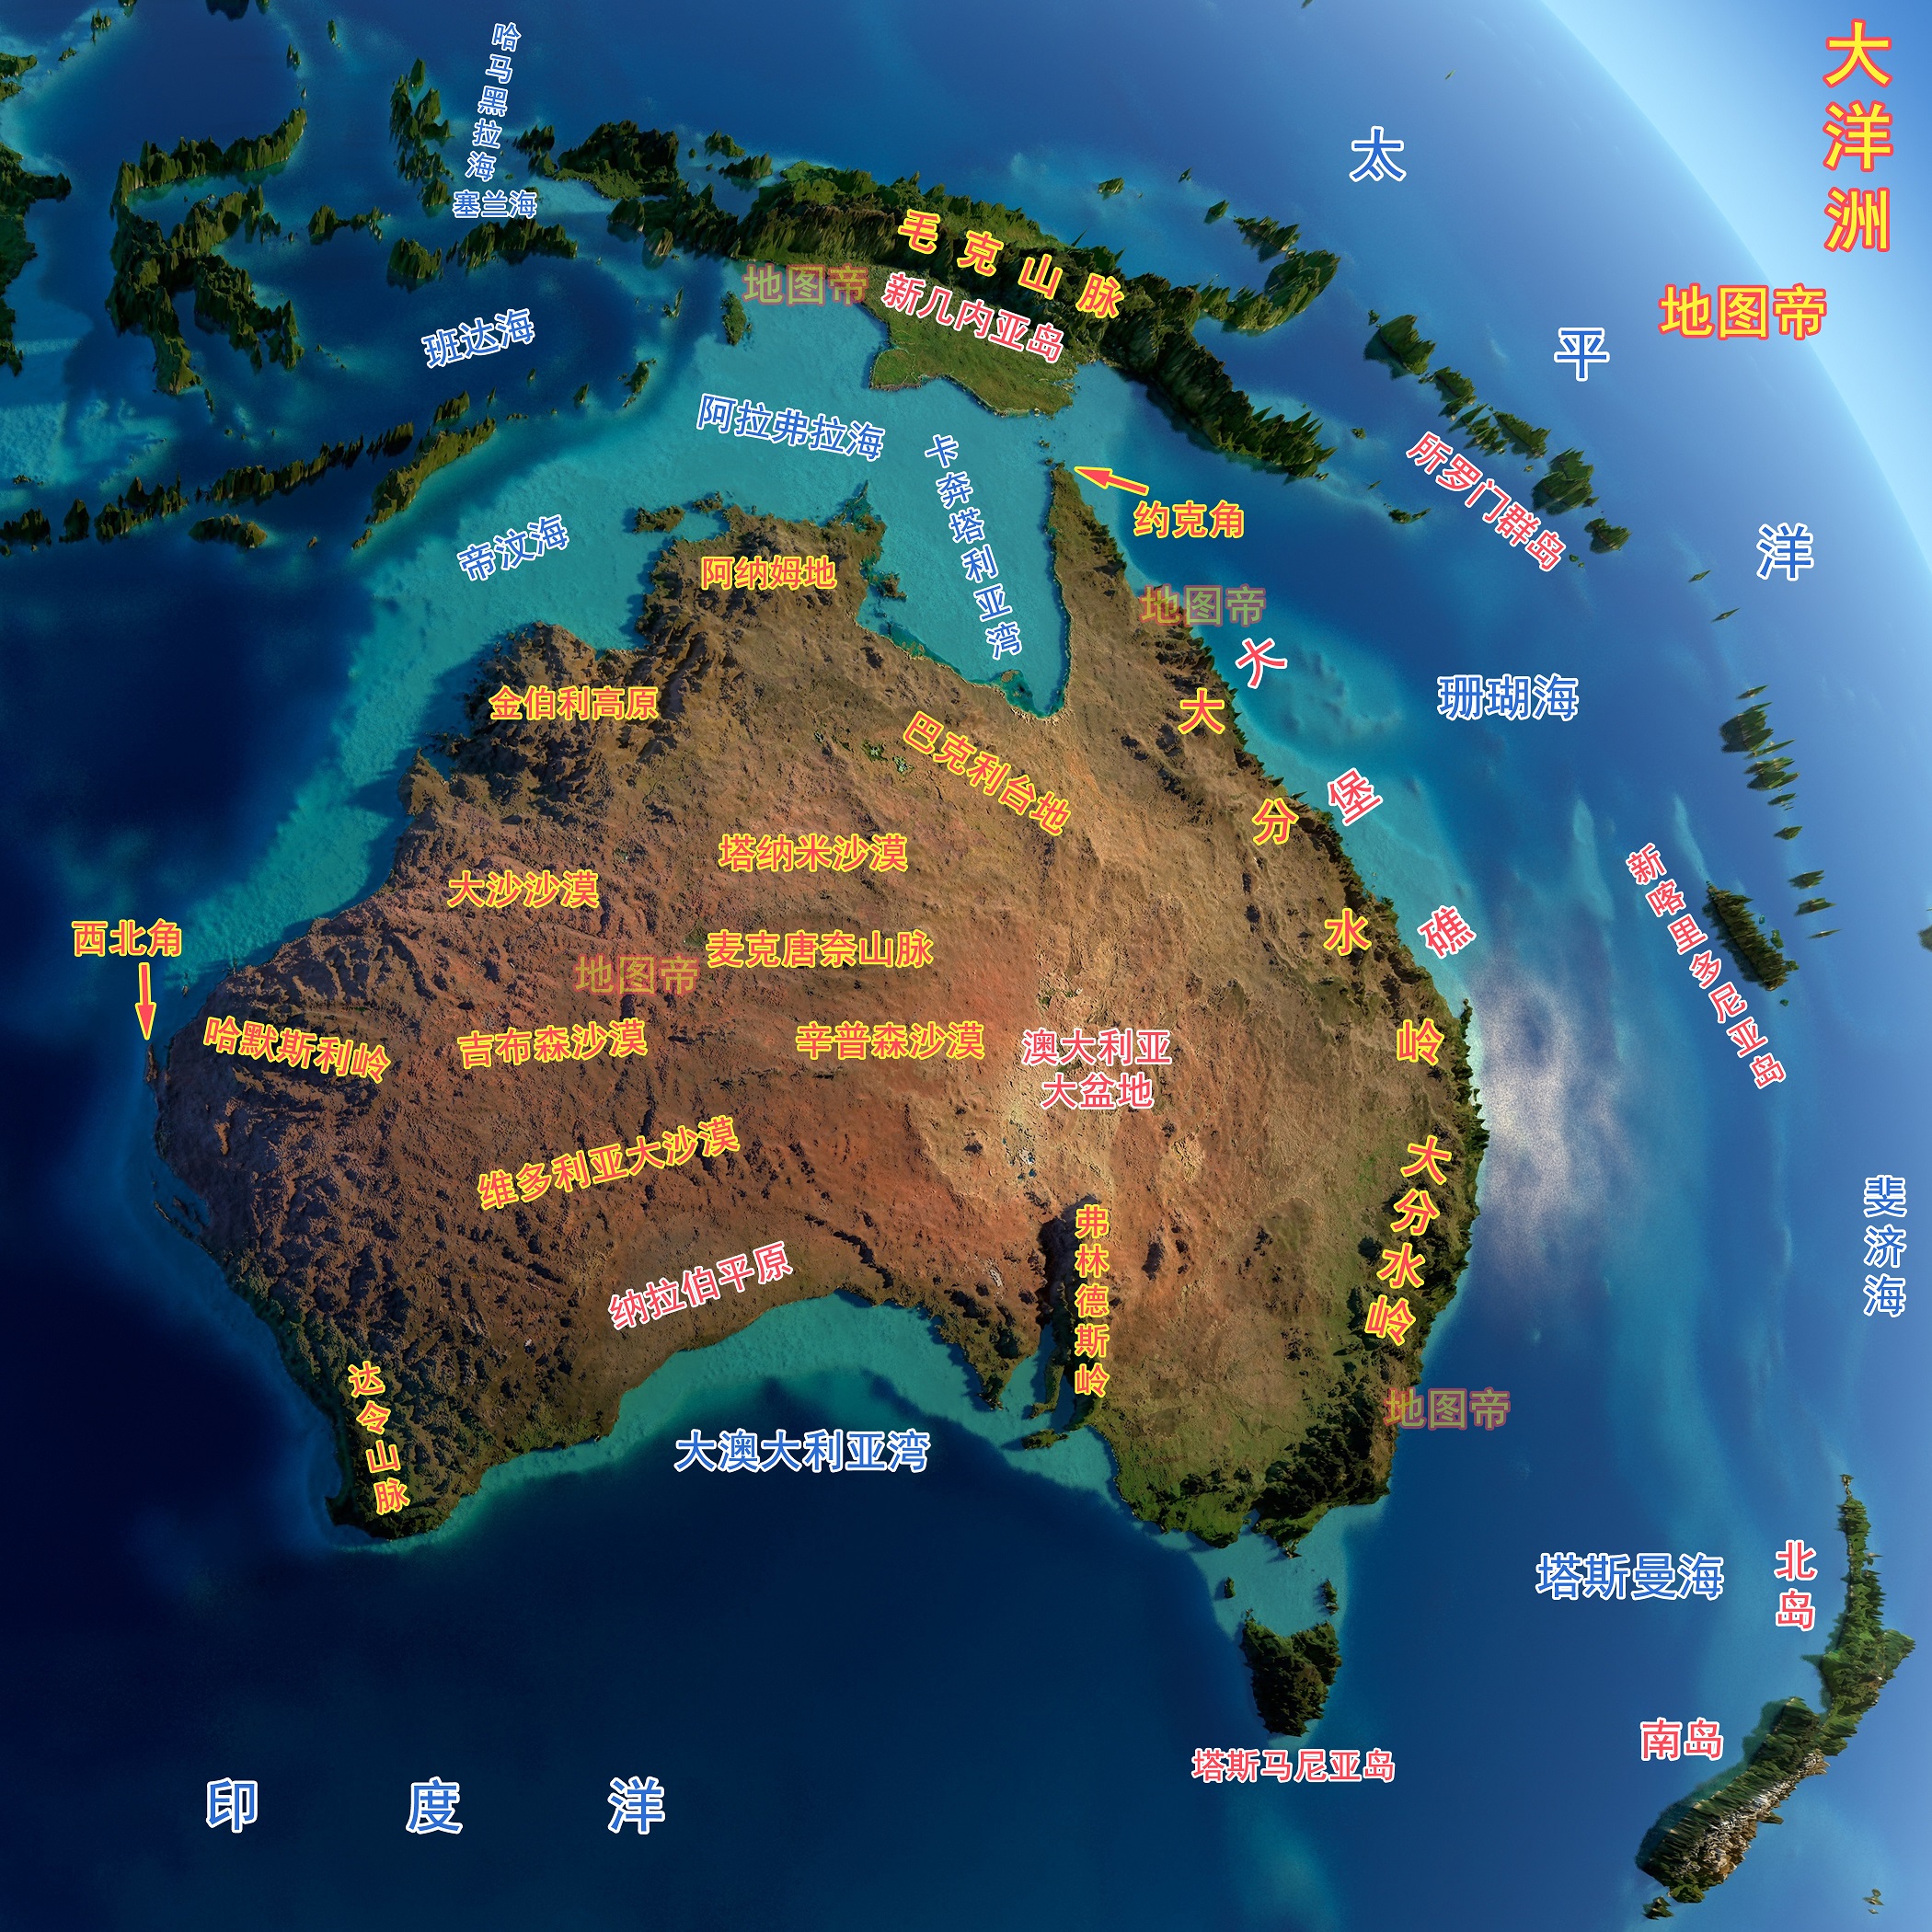 亚洲与大洋洲的分界线,就在巴布亚岛(新几内亚岛)西侧与澳洲西北侧